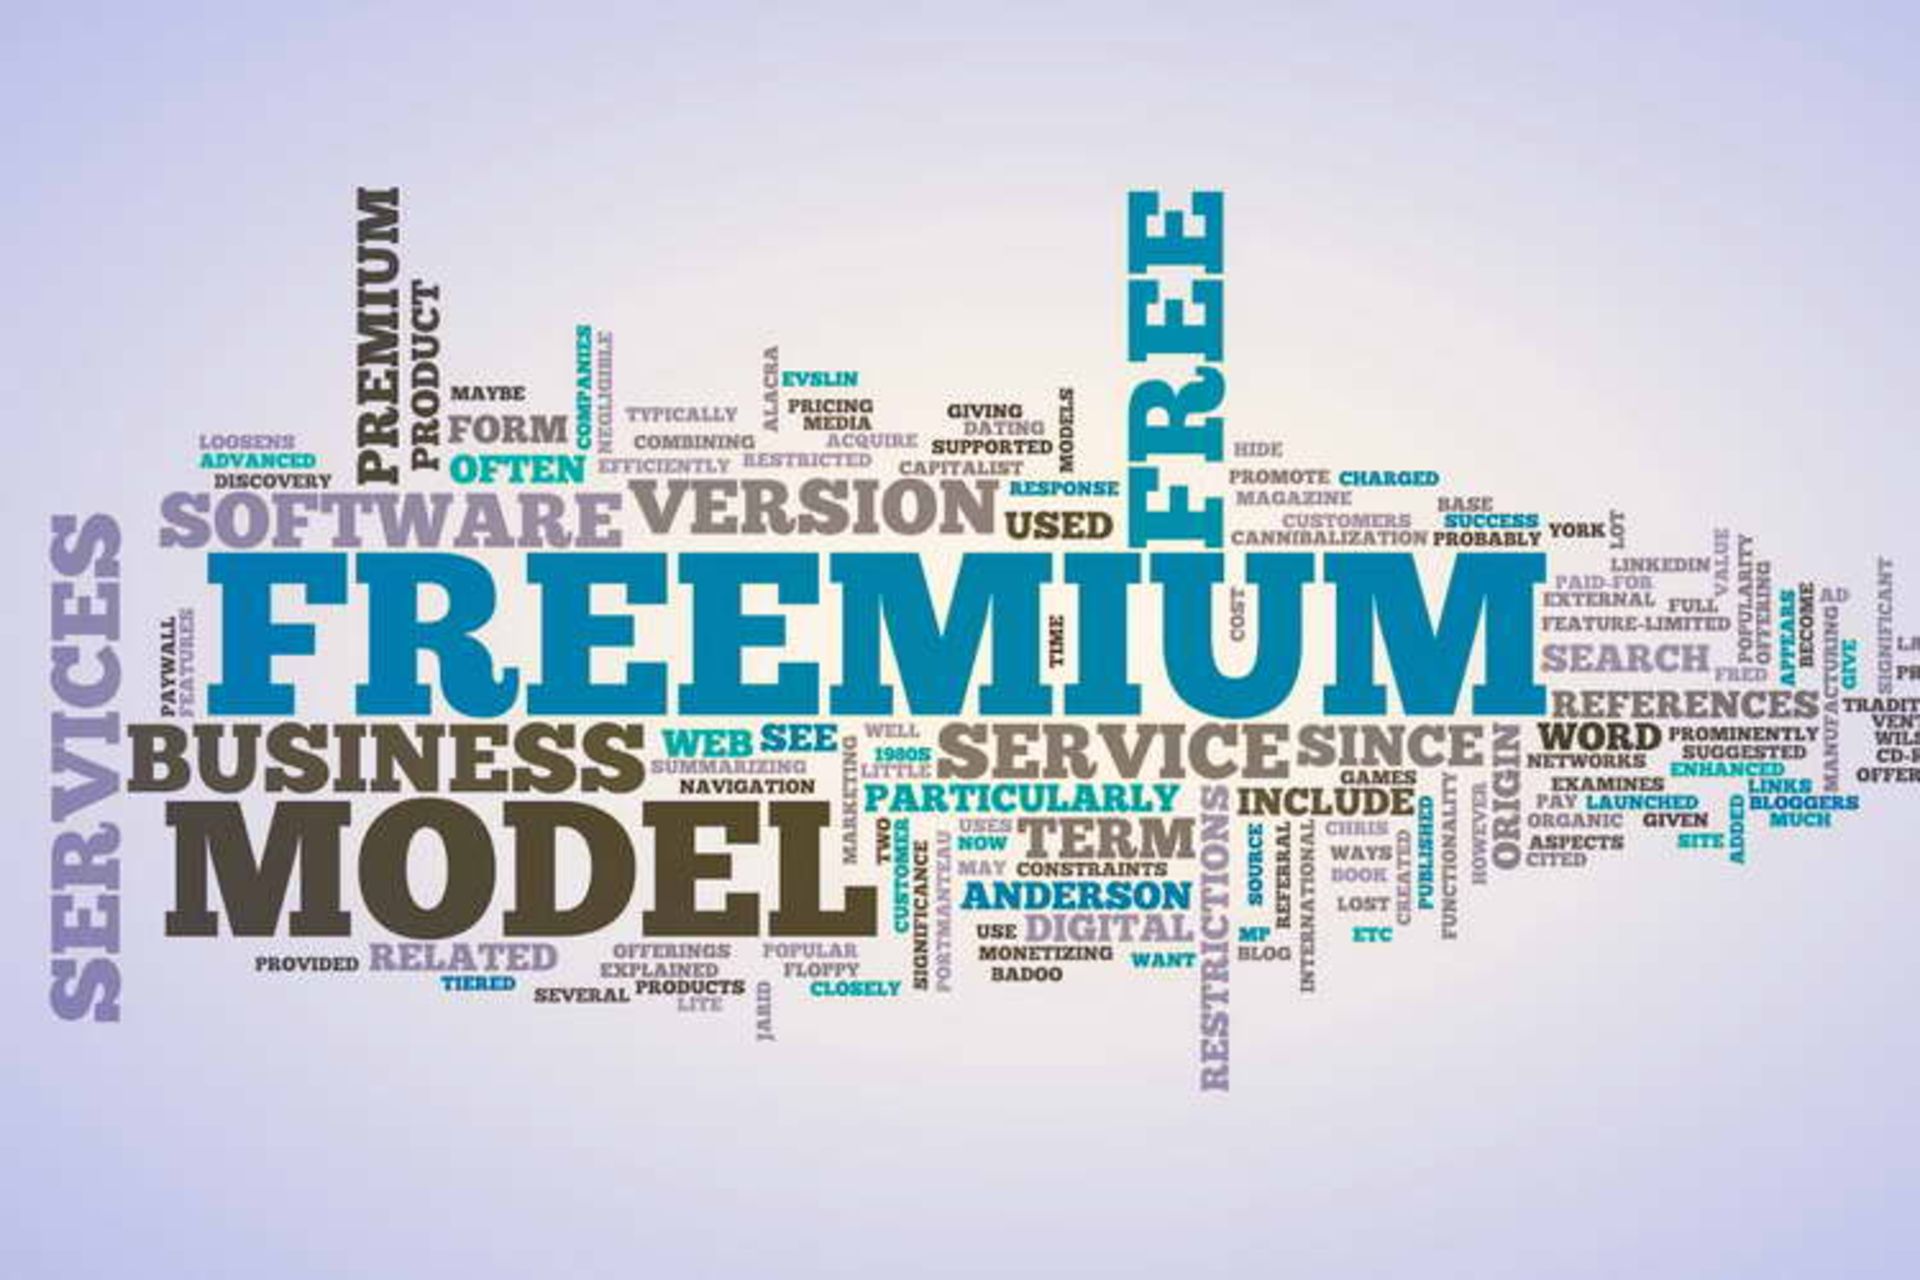 Offer freemium